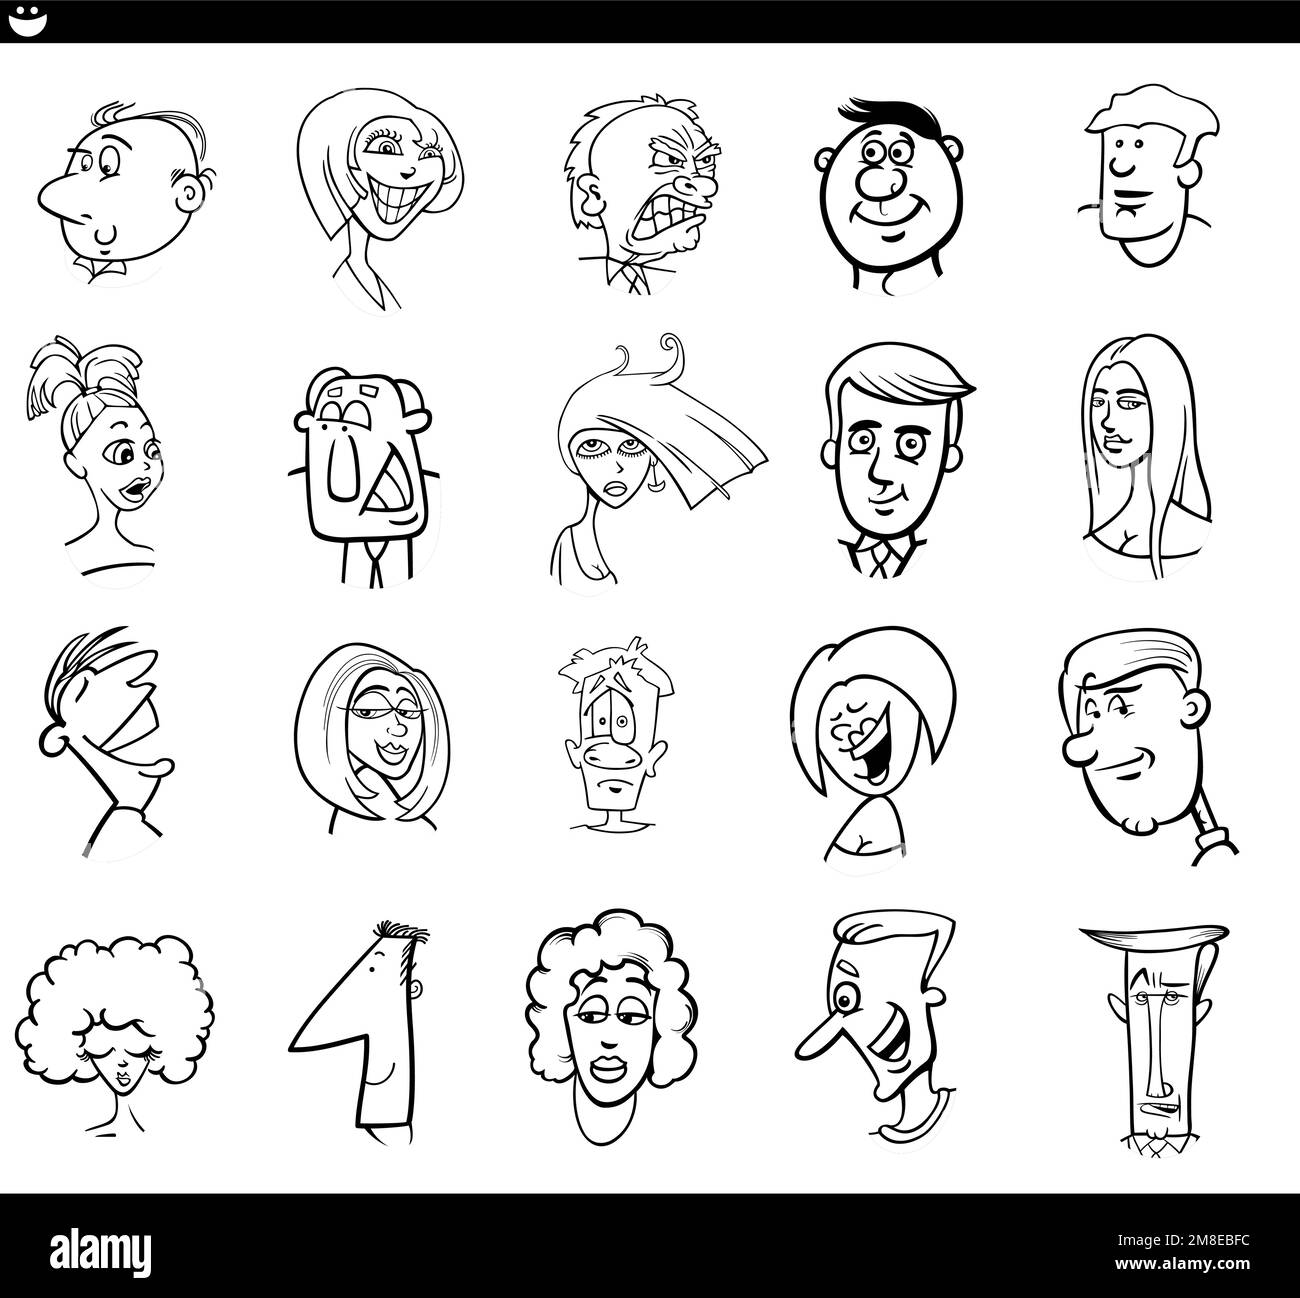 Ilustración de dibujos animados en blanco y negro de personajes de personas divertidas se enfrenta a estados de ánimo establecidos Ilustración del Vector